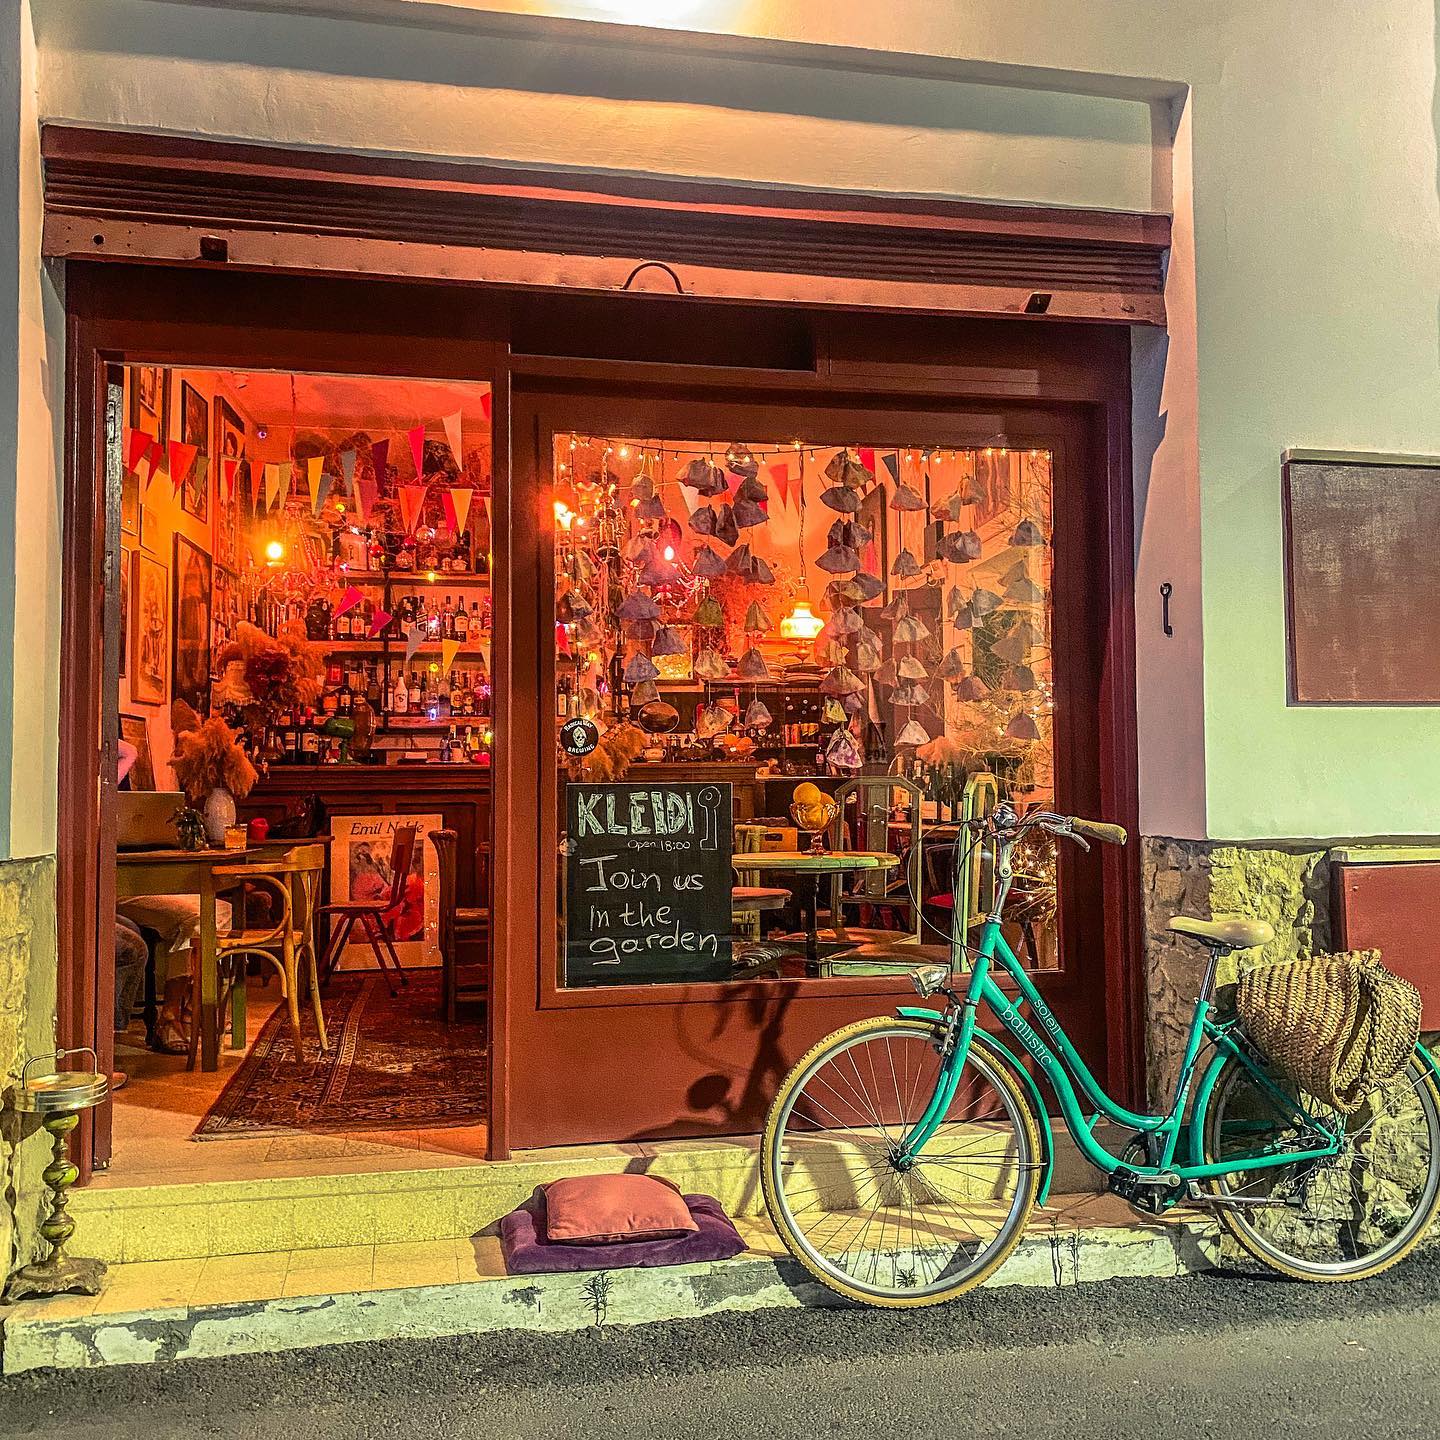 Θερινό σινεμά σε ένα κουκλίστικο café-bar στη Λάρνακα